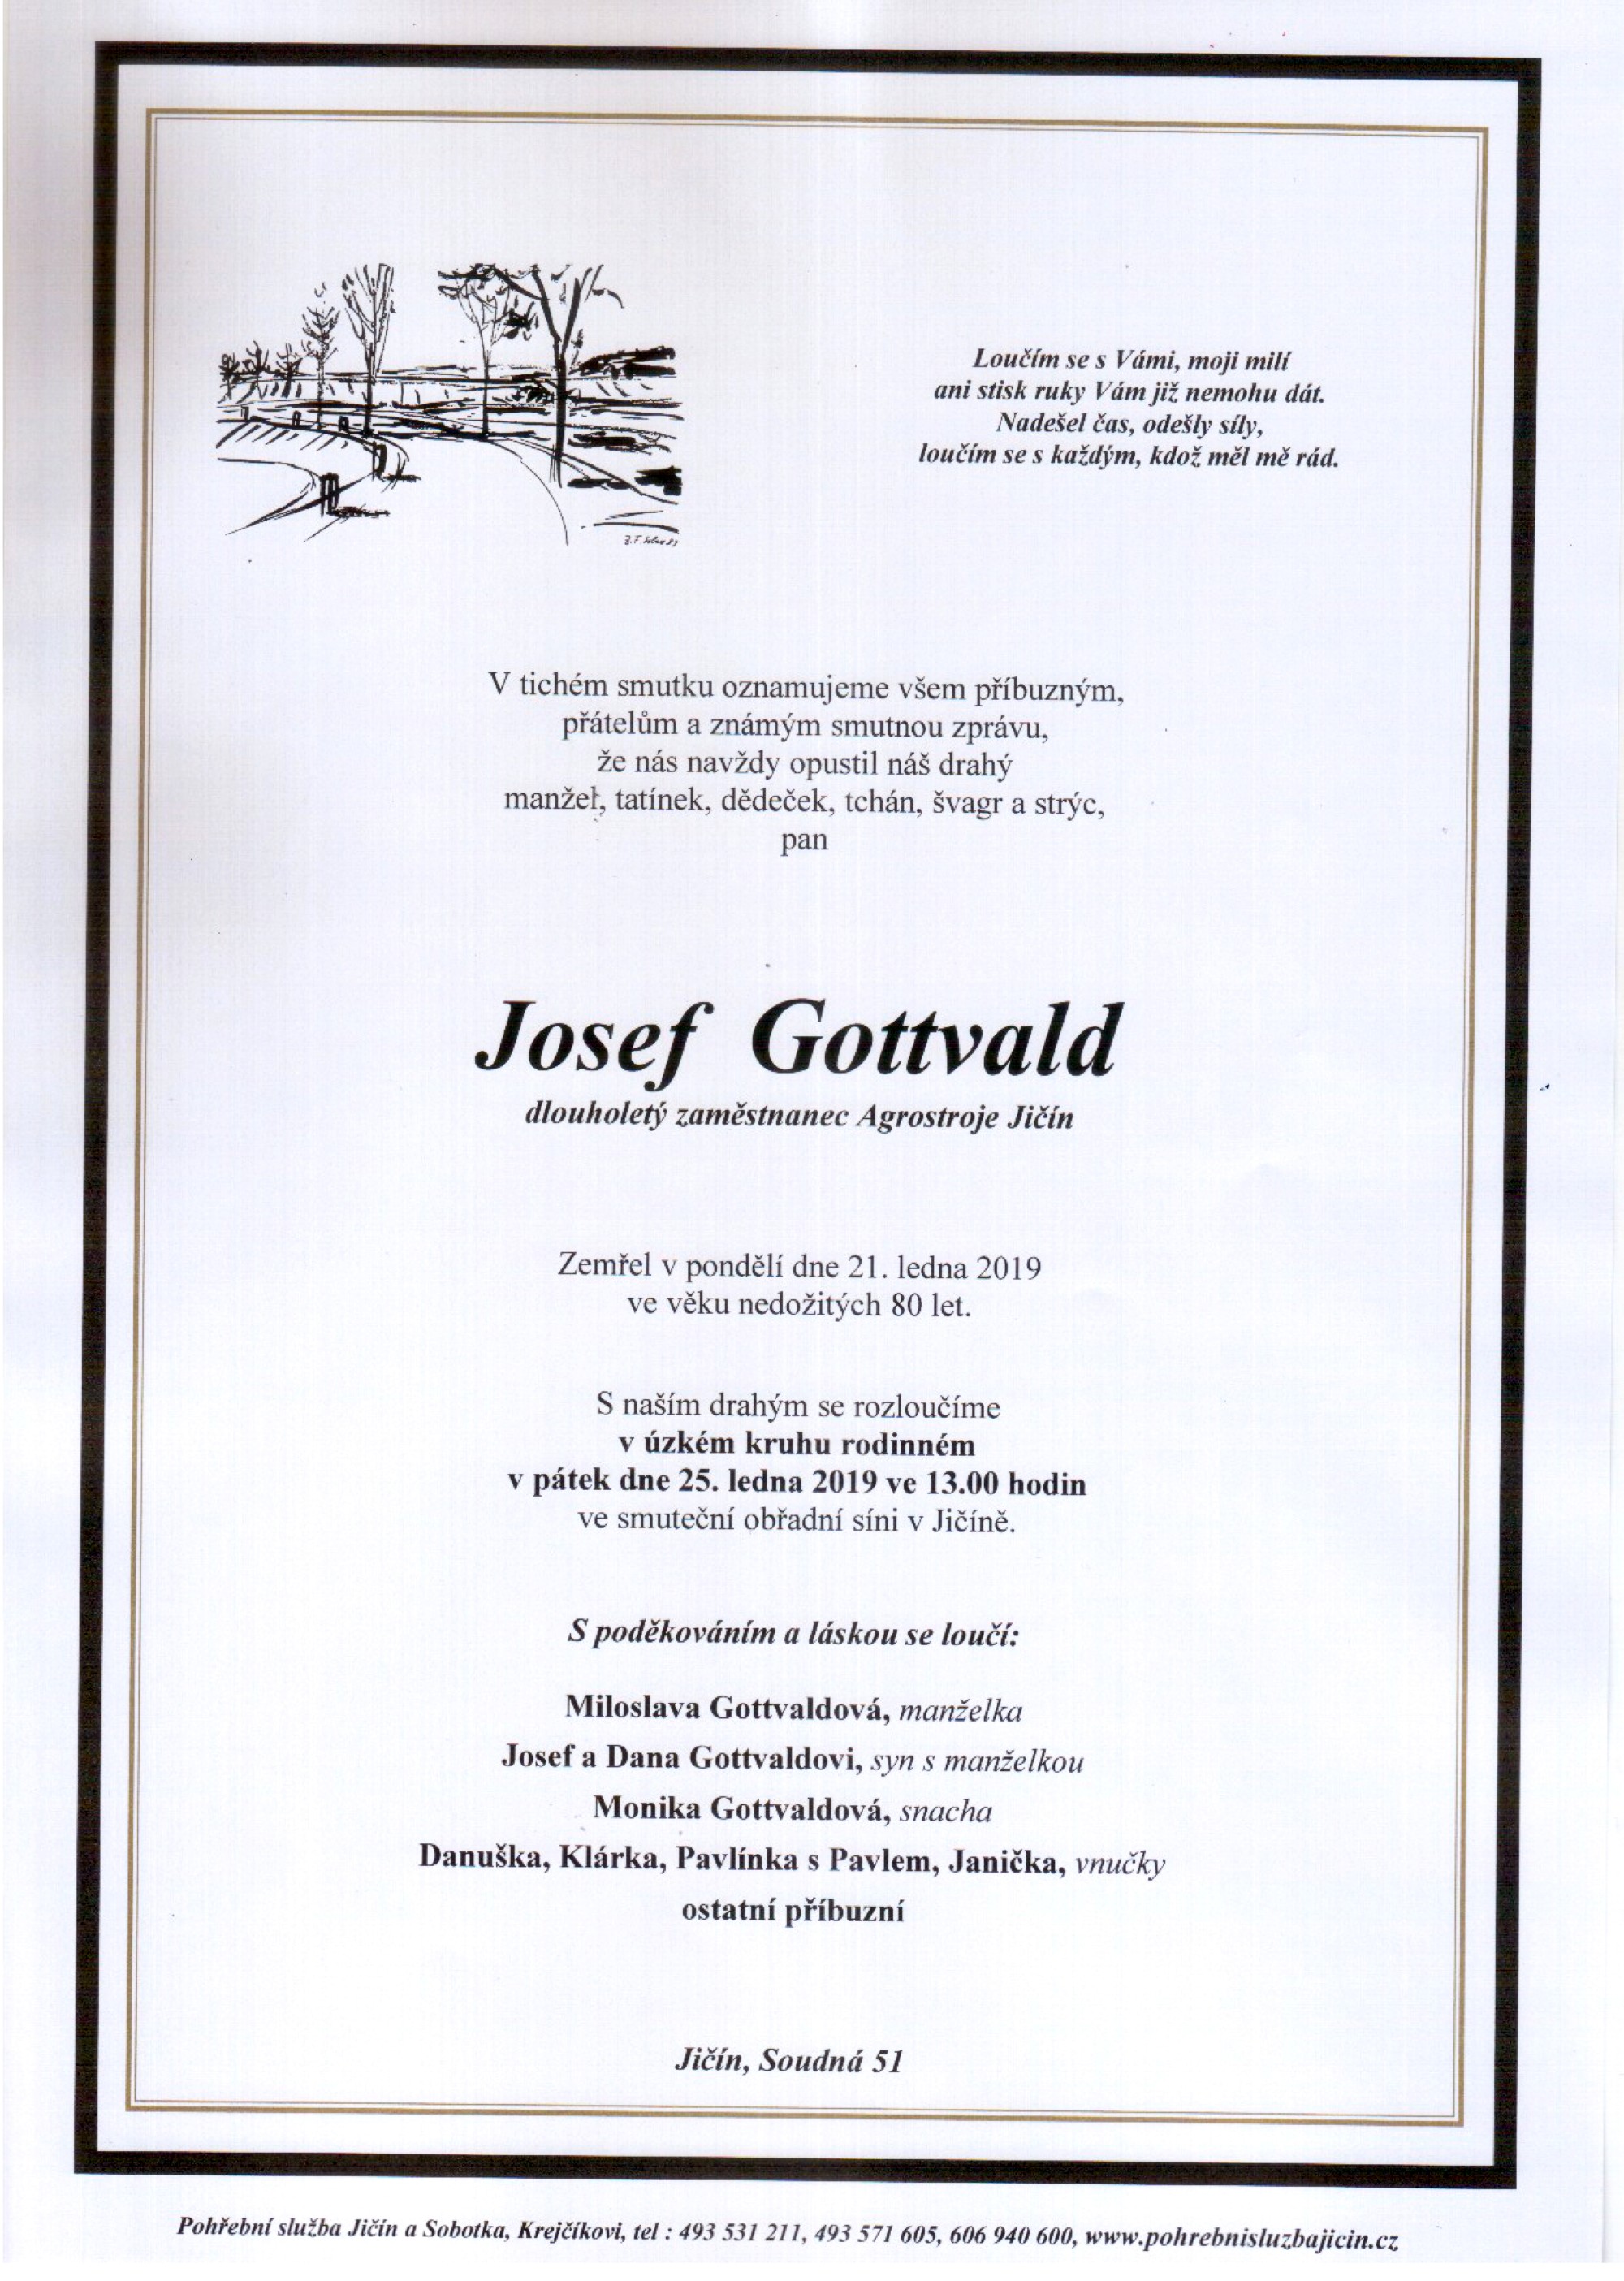 Josef Gottvald